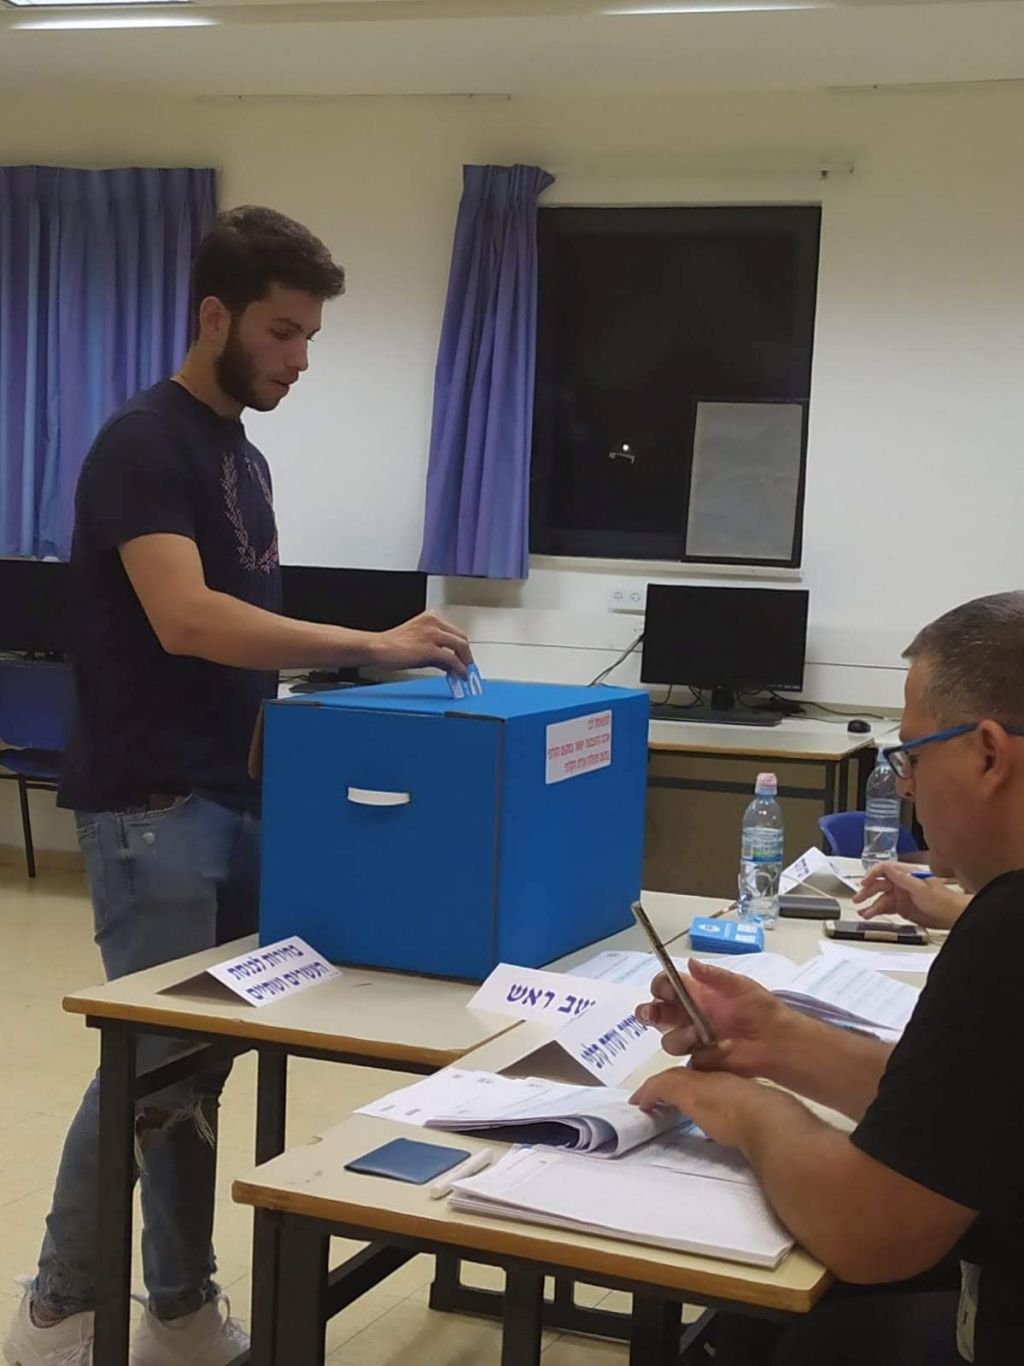 Ariel Zalovich alcanzó justito a votar por primera vez, habiendo cumplido 18 el mes pasado